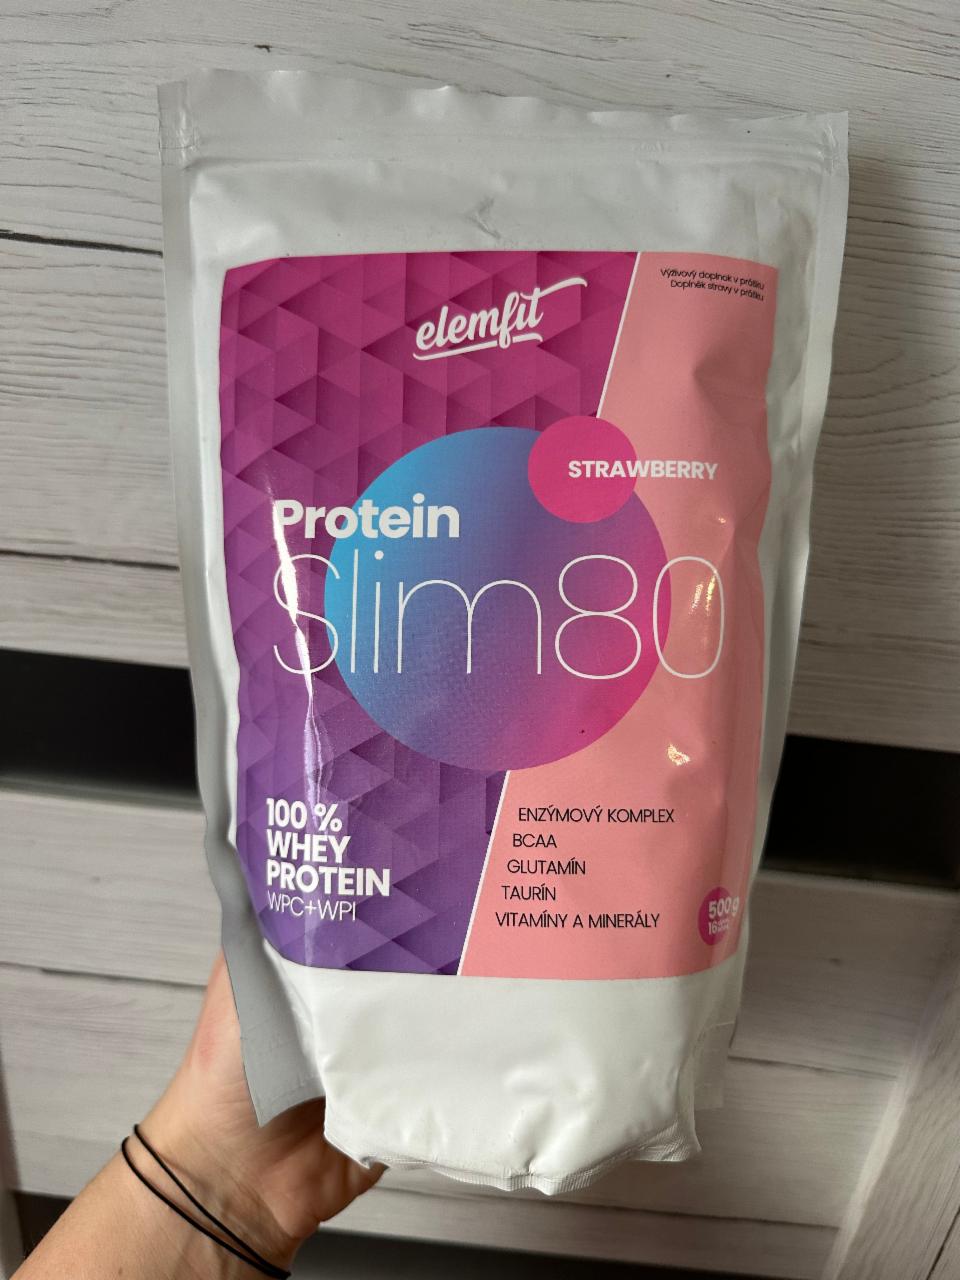 Fotografie - Protein Slim80 Elemfit strawberry Elemfit